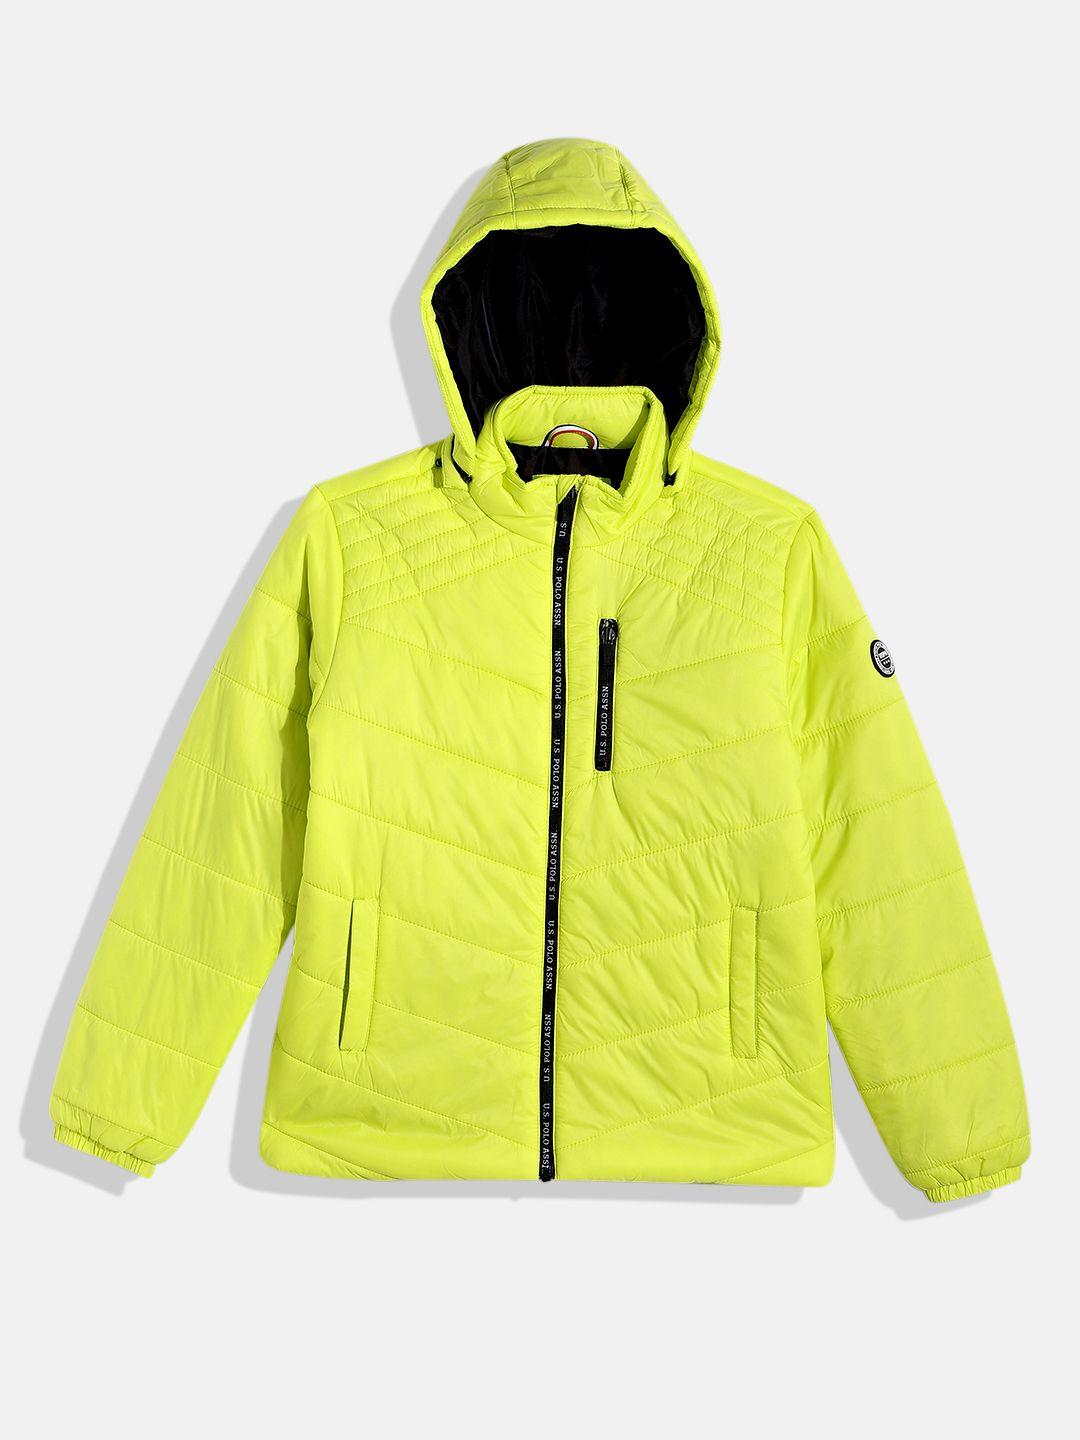 u.s. polo assn. kids boys fluorescent green solid puffer jacket